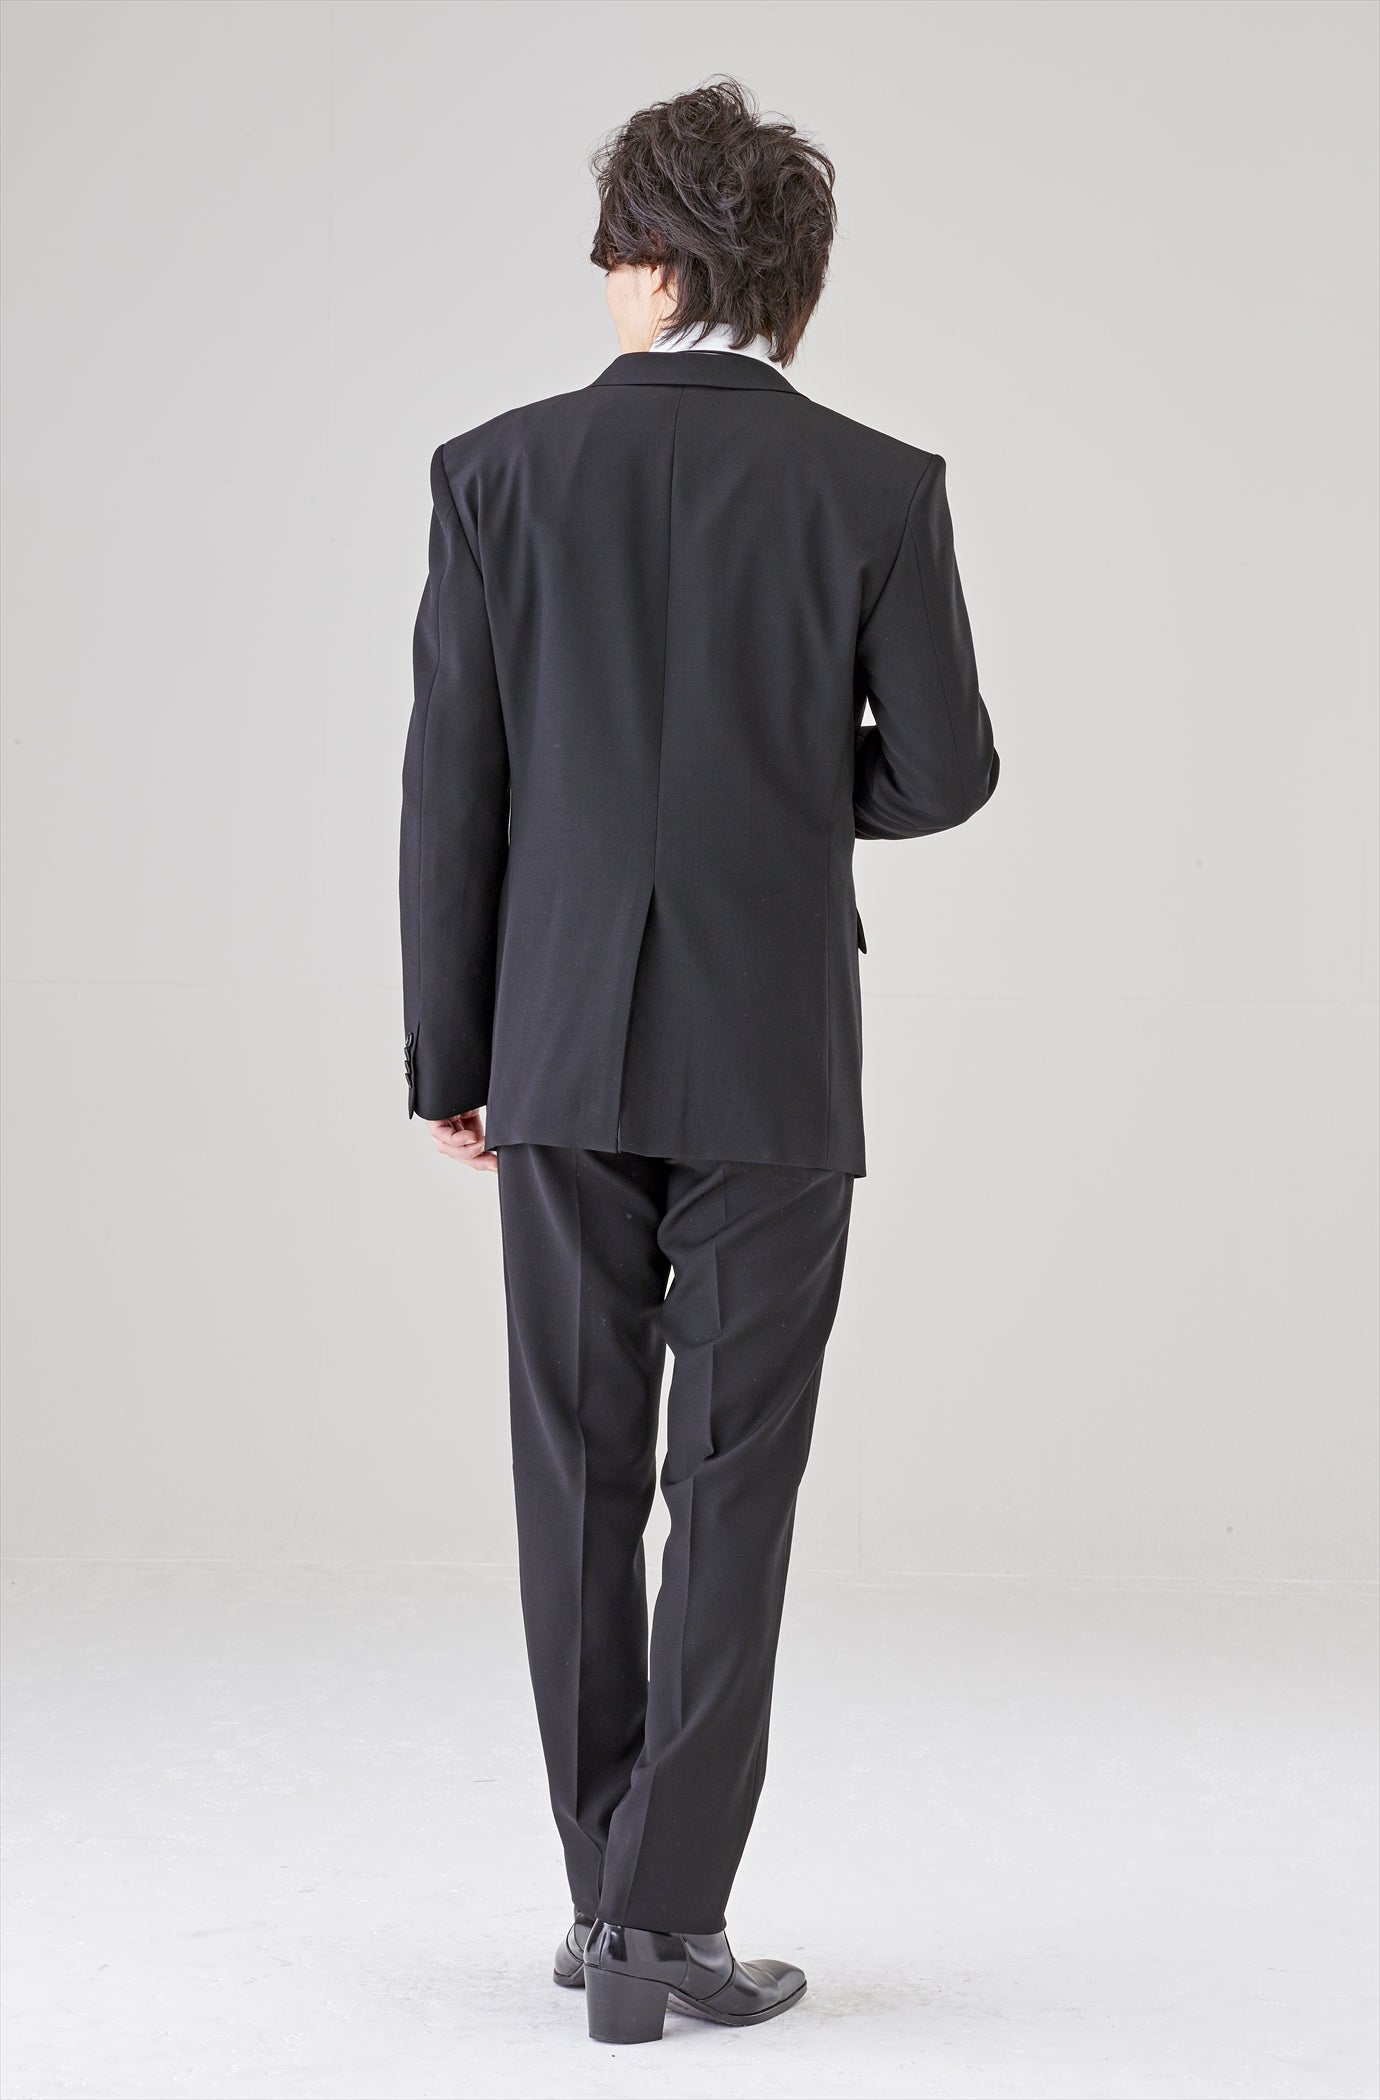 メンズブラックスーツ シングル アジャスターあり 2453 – 喪服・礼服・ブラックフォーマル専門通販サイト MONOIR(モノワール)